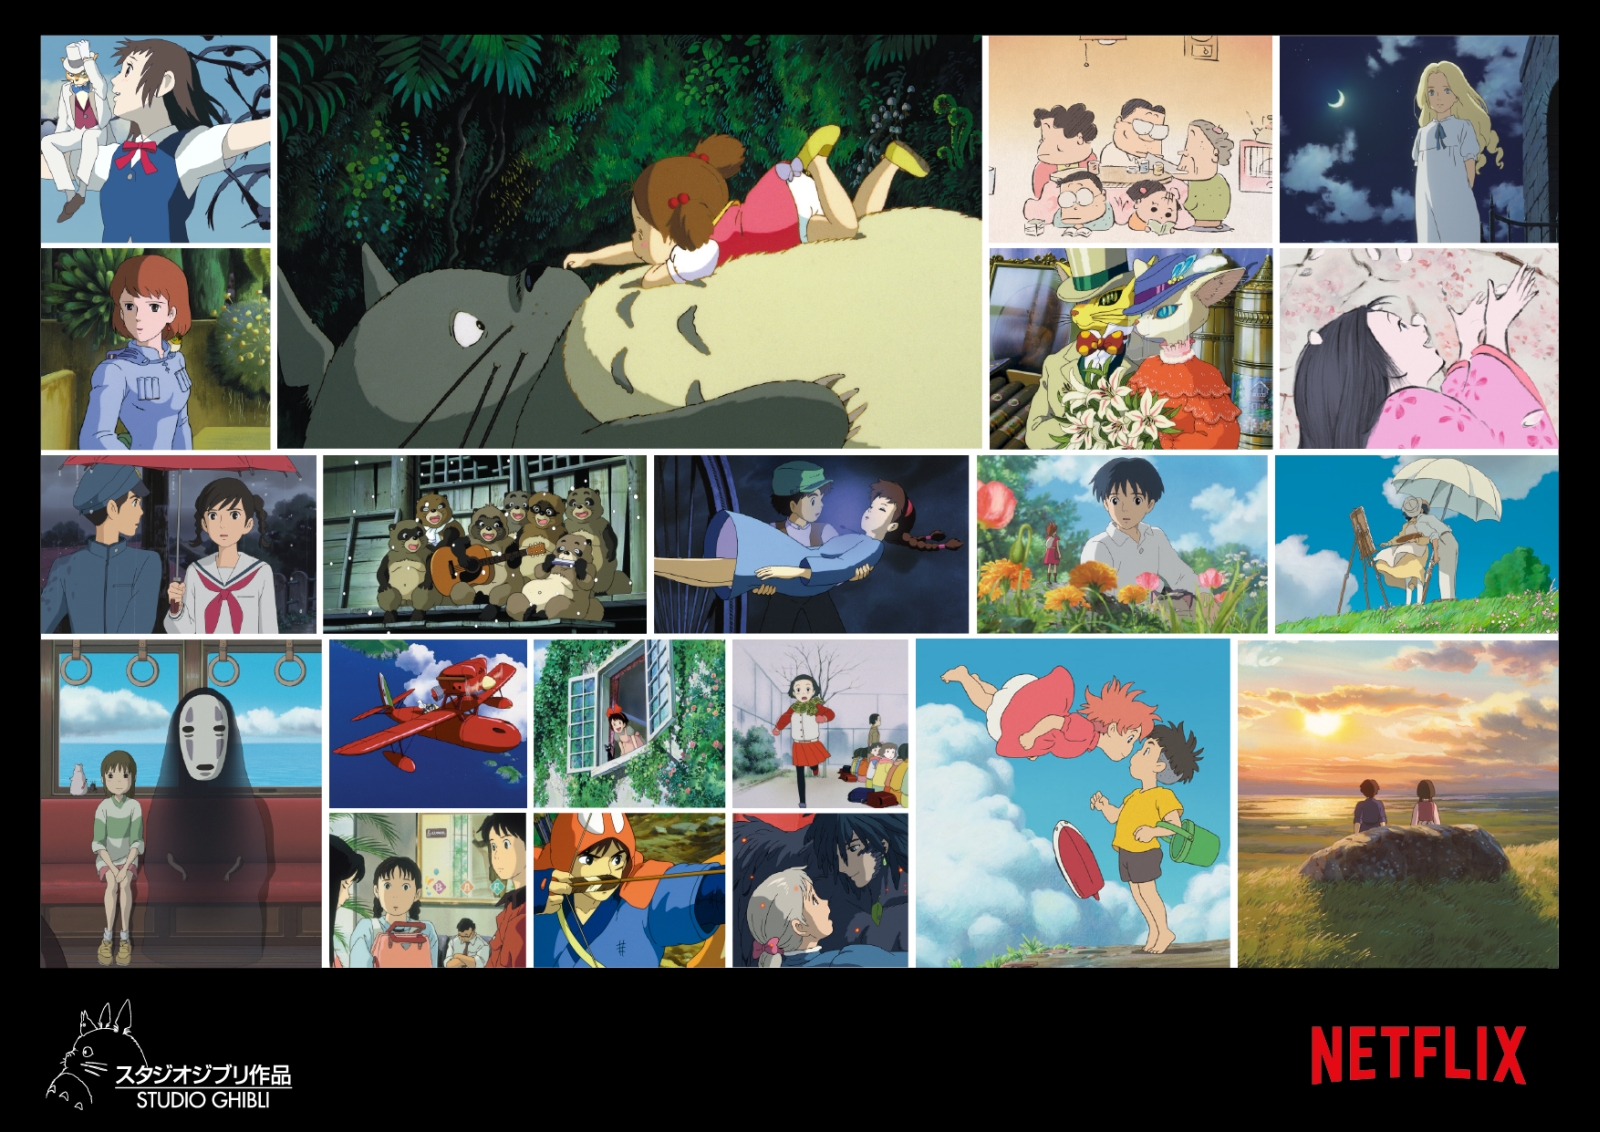 Netflix vai transmitir filmes do Studio Ghibli a partir de fevereiro